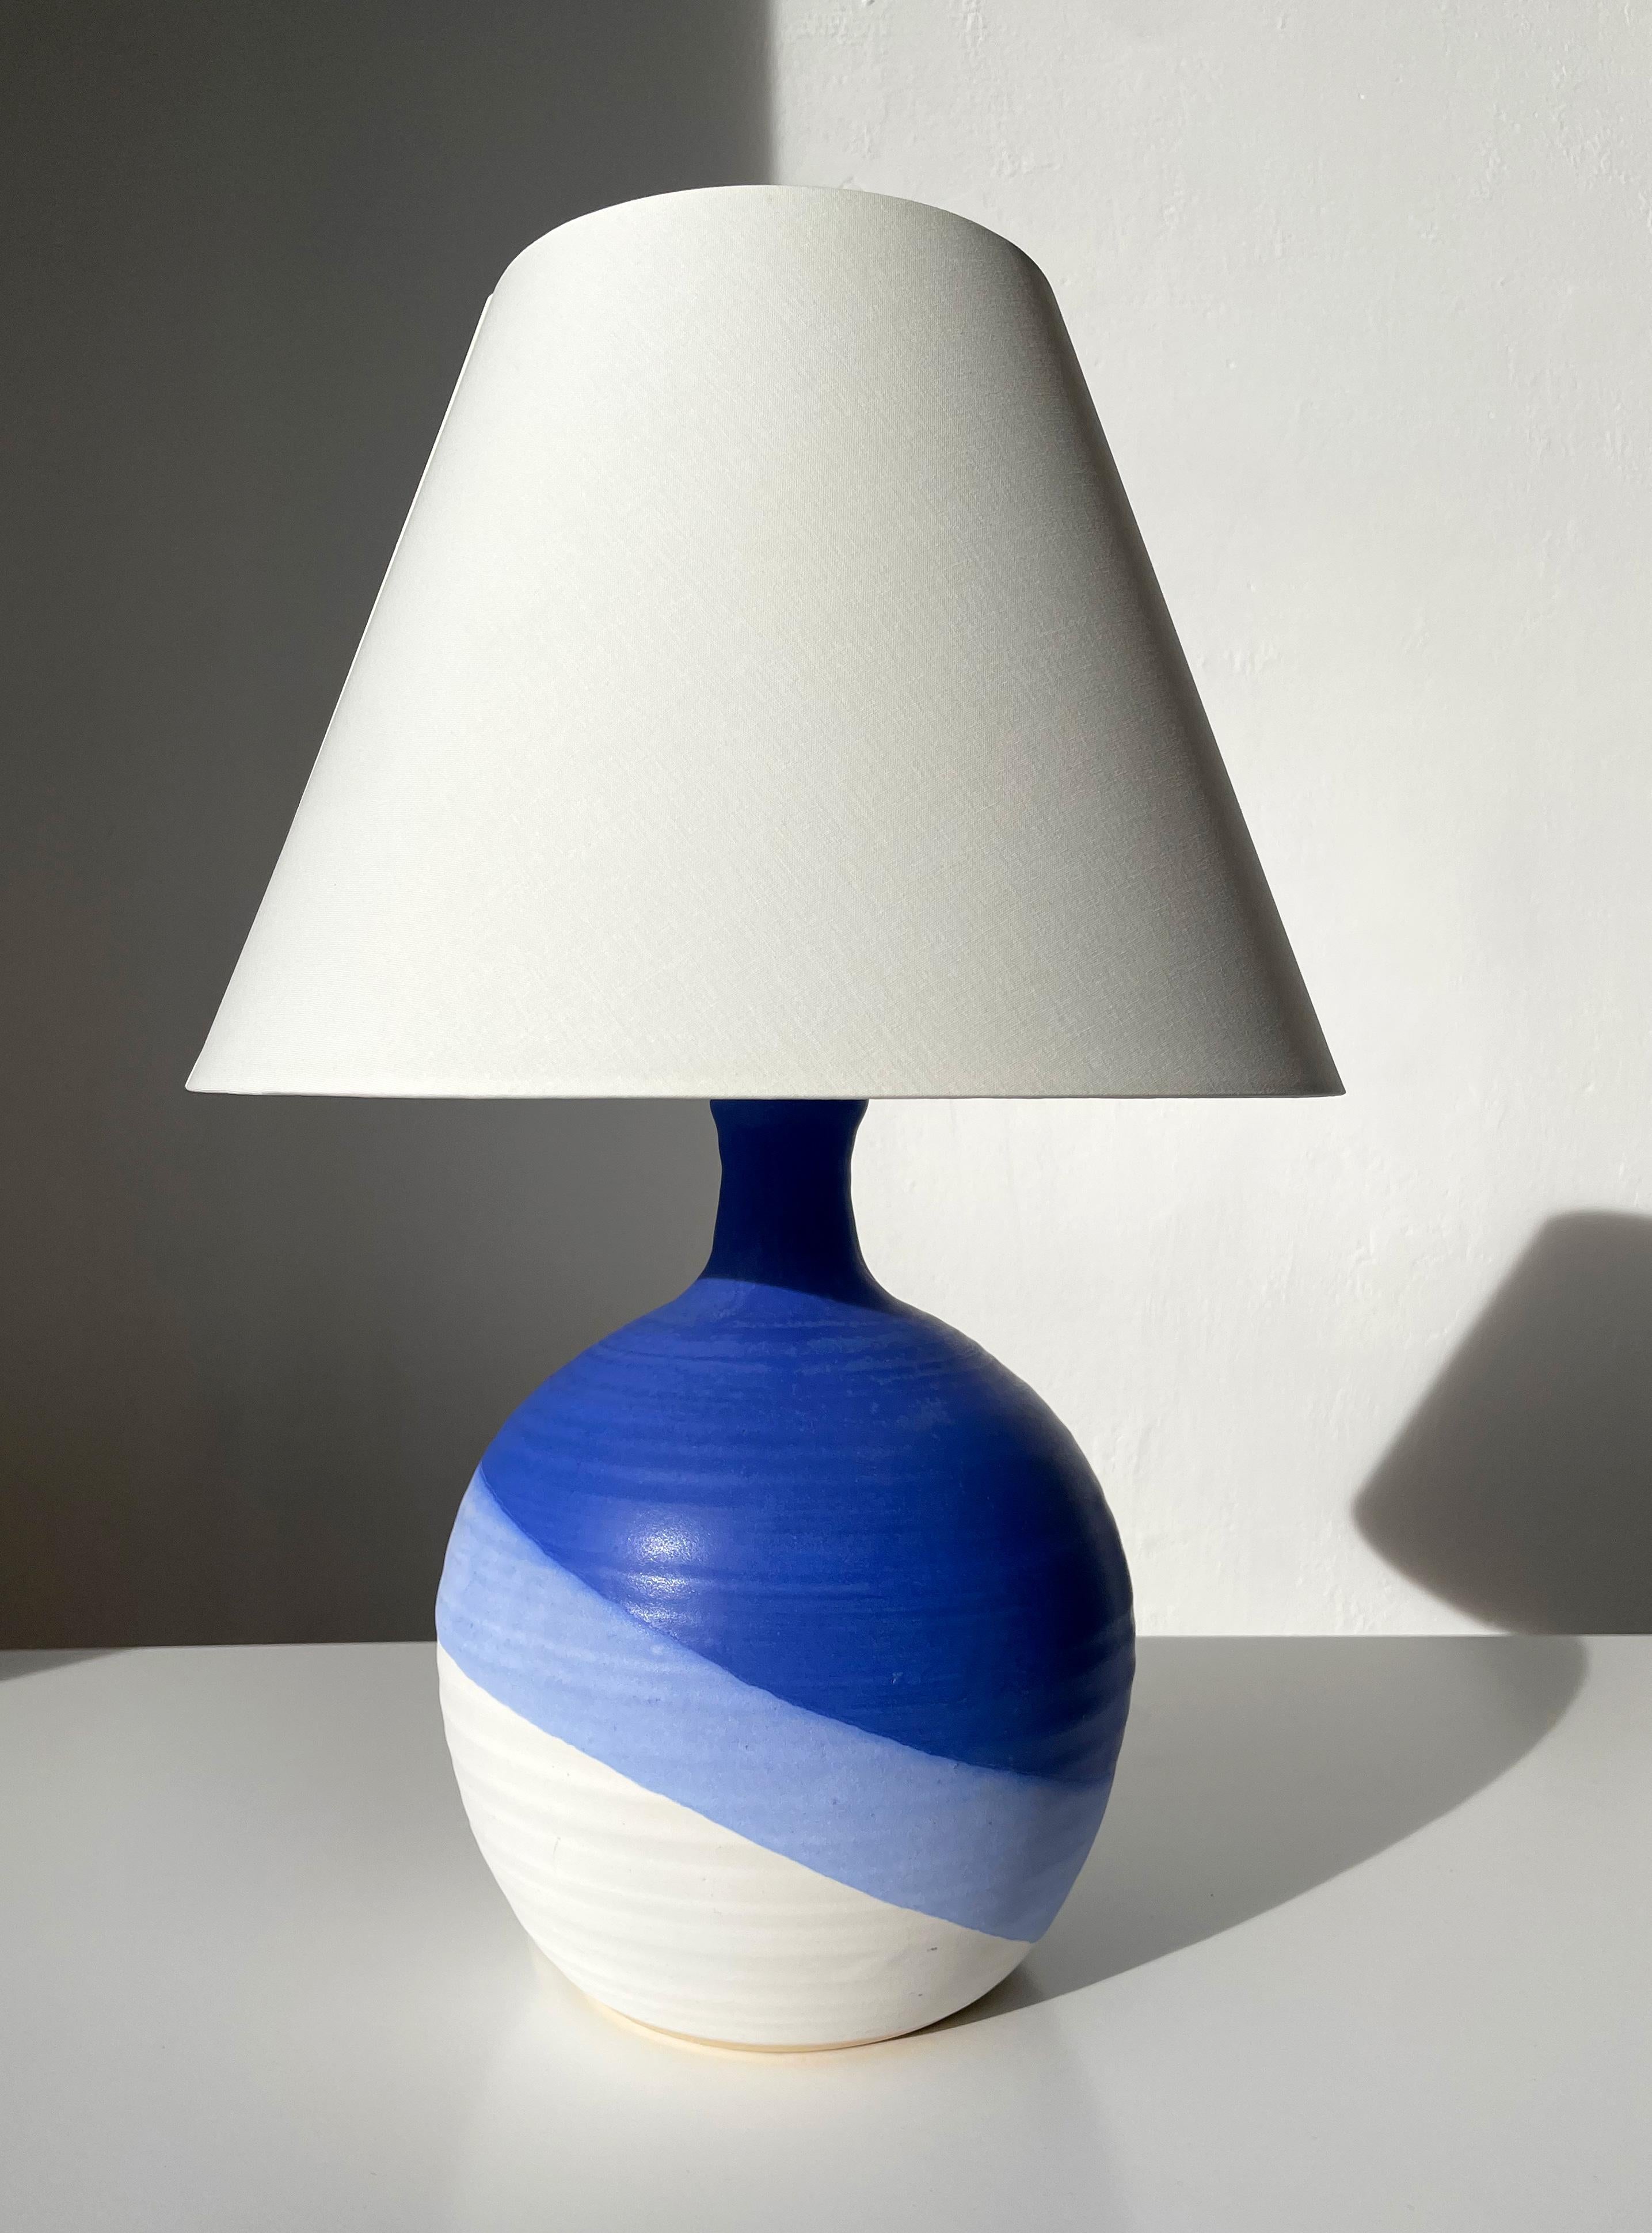 Lampe de table moderniste danoise en céramique en forme de globe. Glaçure bleue brillante sur glaçure lilas et blanche mate en bandes asymétriques accentuant la forme ronde. Fabriqué par KN Keramik dans les années 1980. Signé sous la base. Nouveau